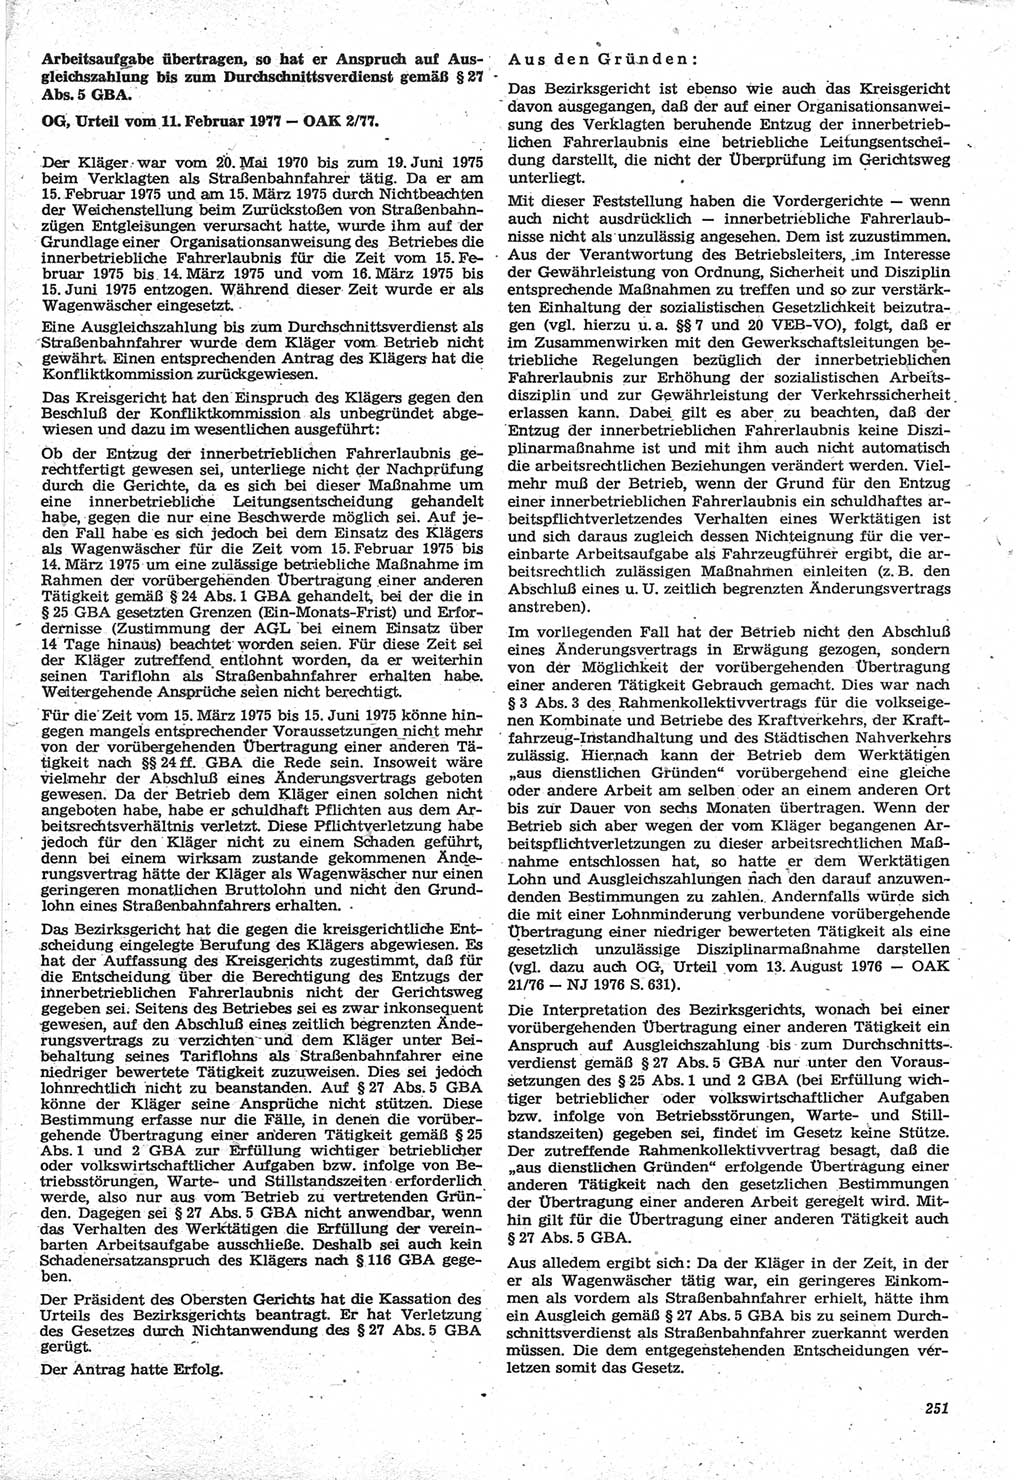 Neue Justiz (NJ), Zeitschrift für Recht und Rechtswissenschaft-Zeitschrift, sozialistisches Recht und Gesetzlichkeit, 31. Jahrgang 1977, Seite 251 (NJ DDR 1977, S. 251)